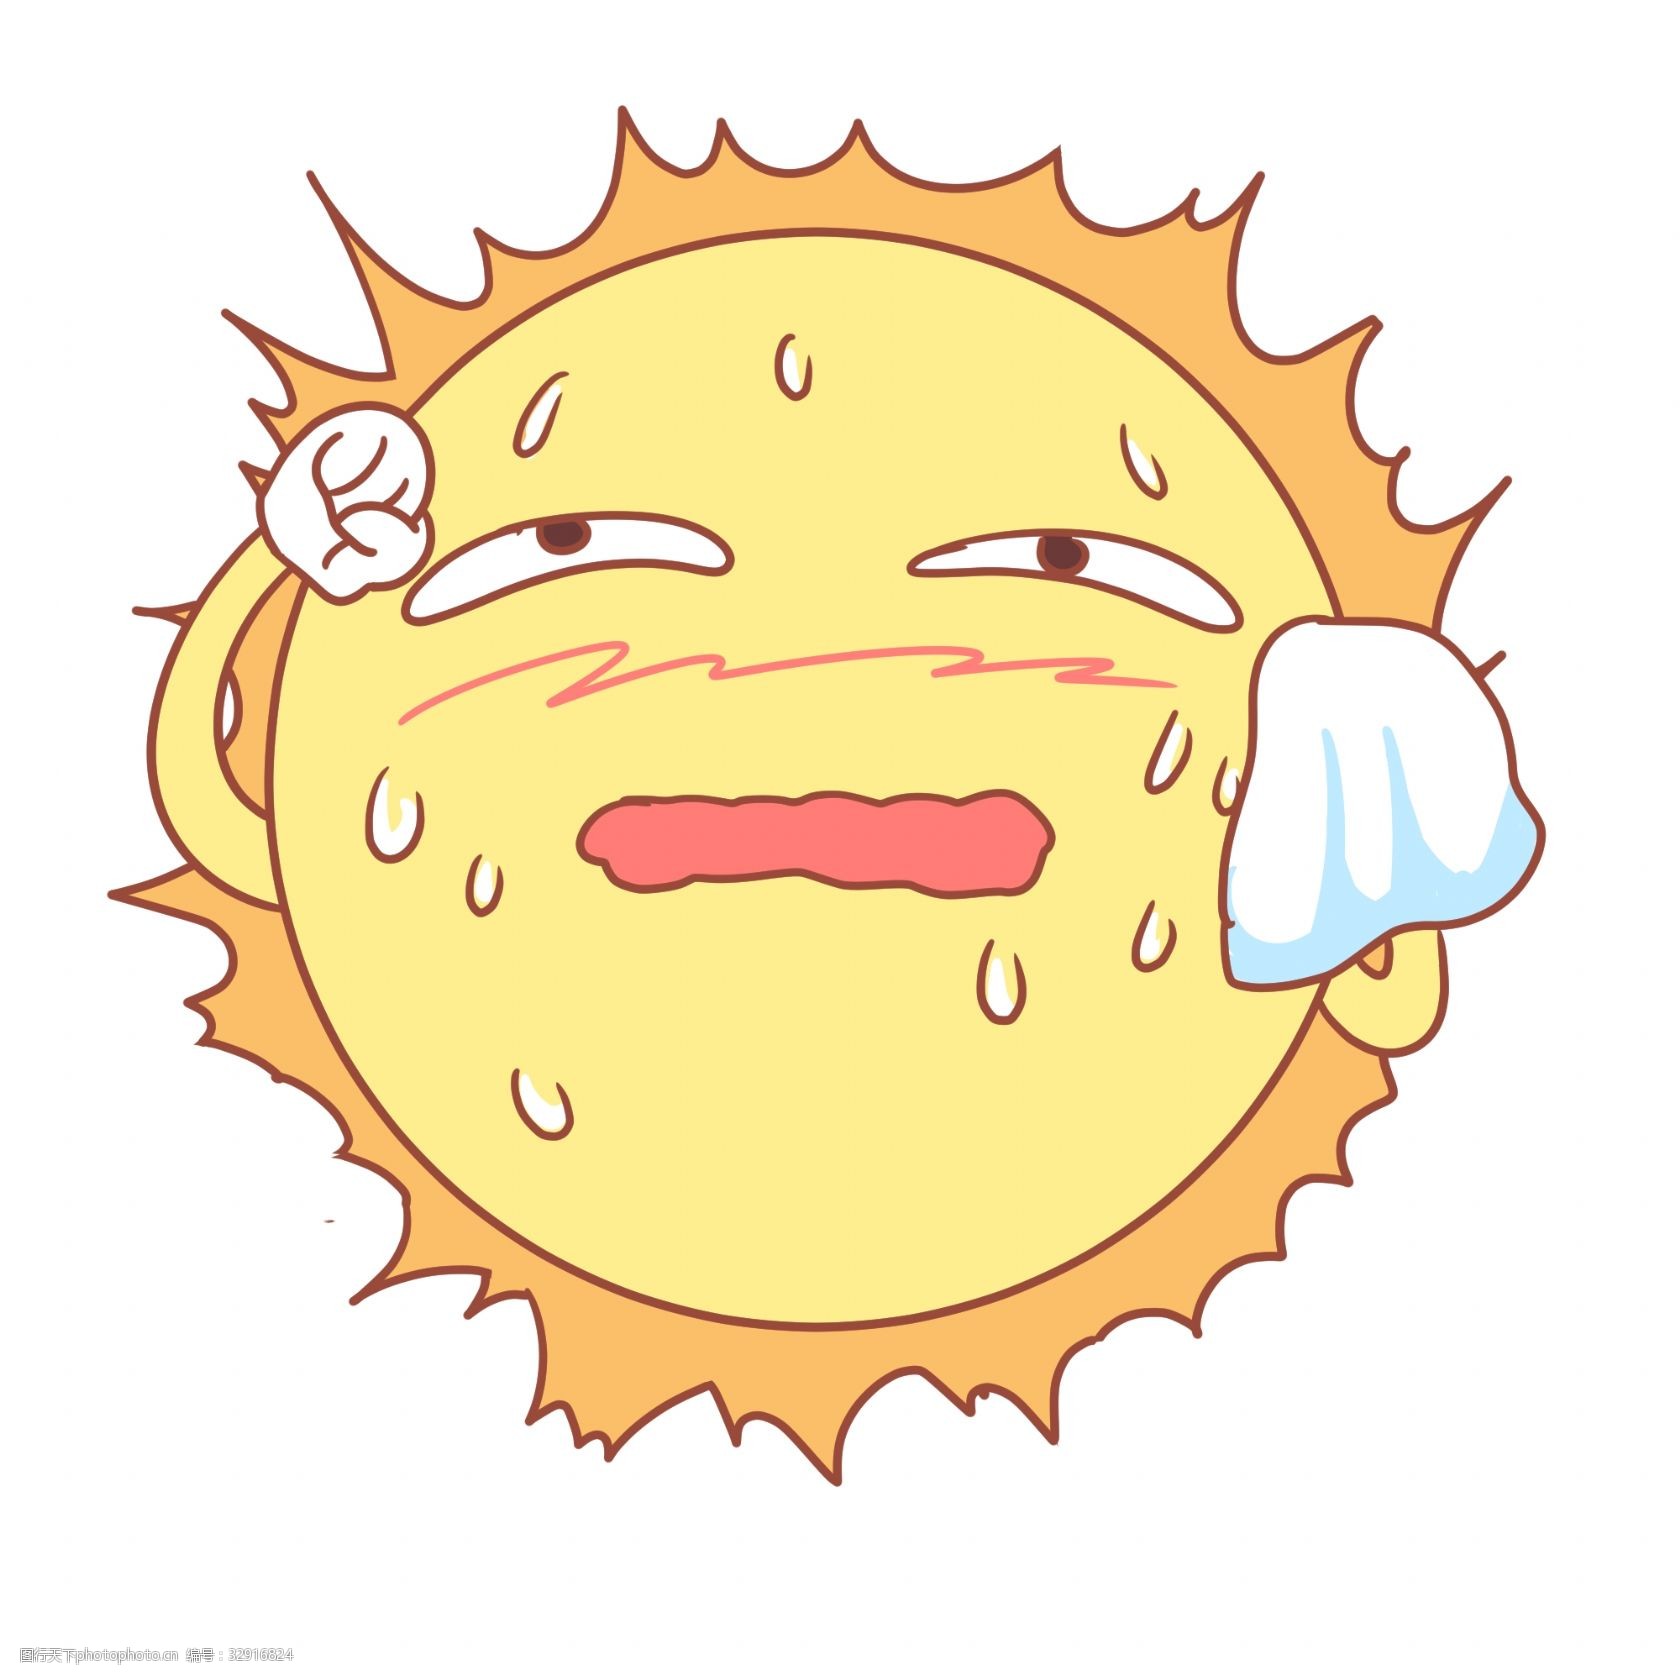 关键词:大汗淋漓太阳插图 太阳 汗水 流汗的太阳